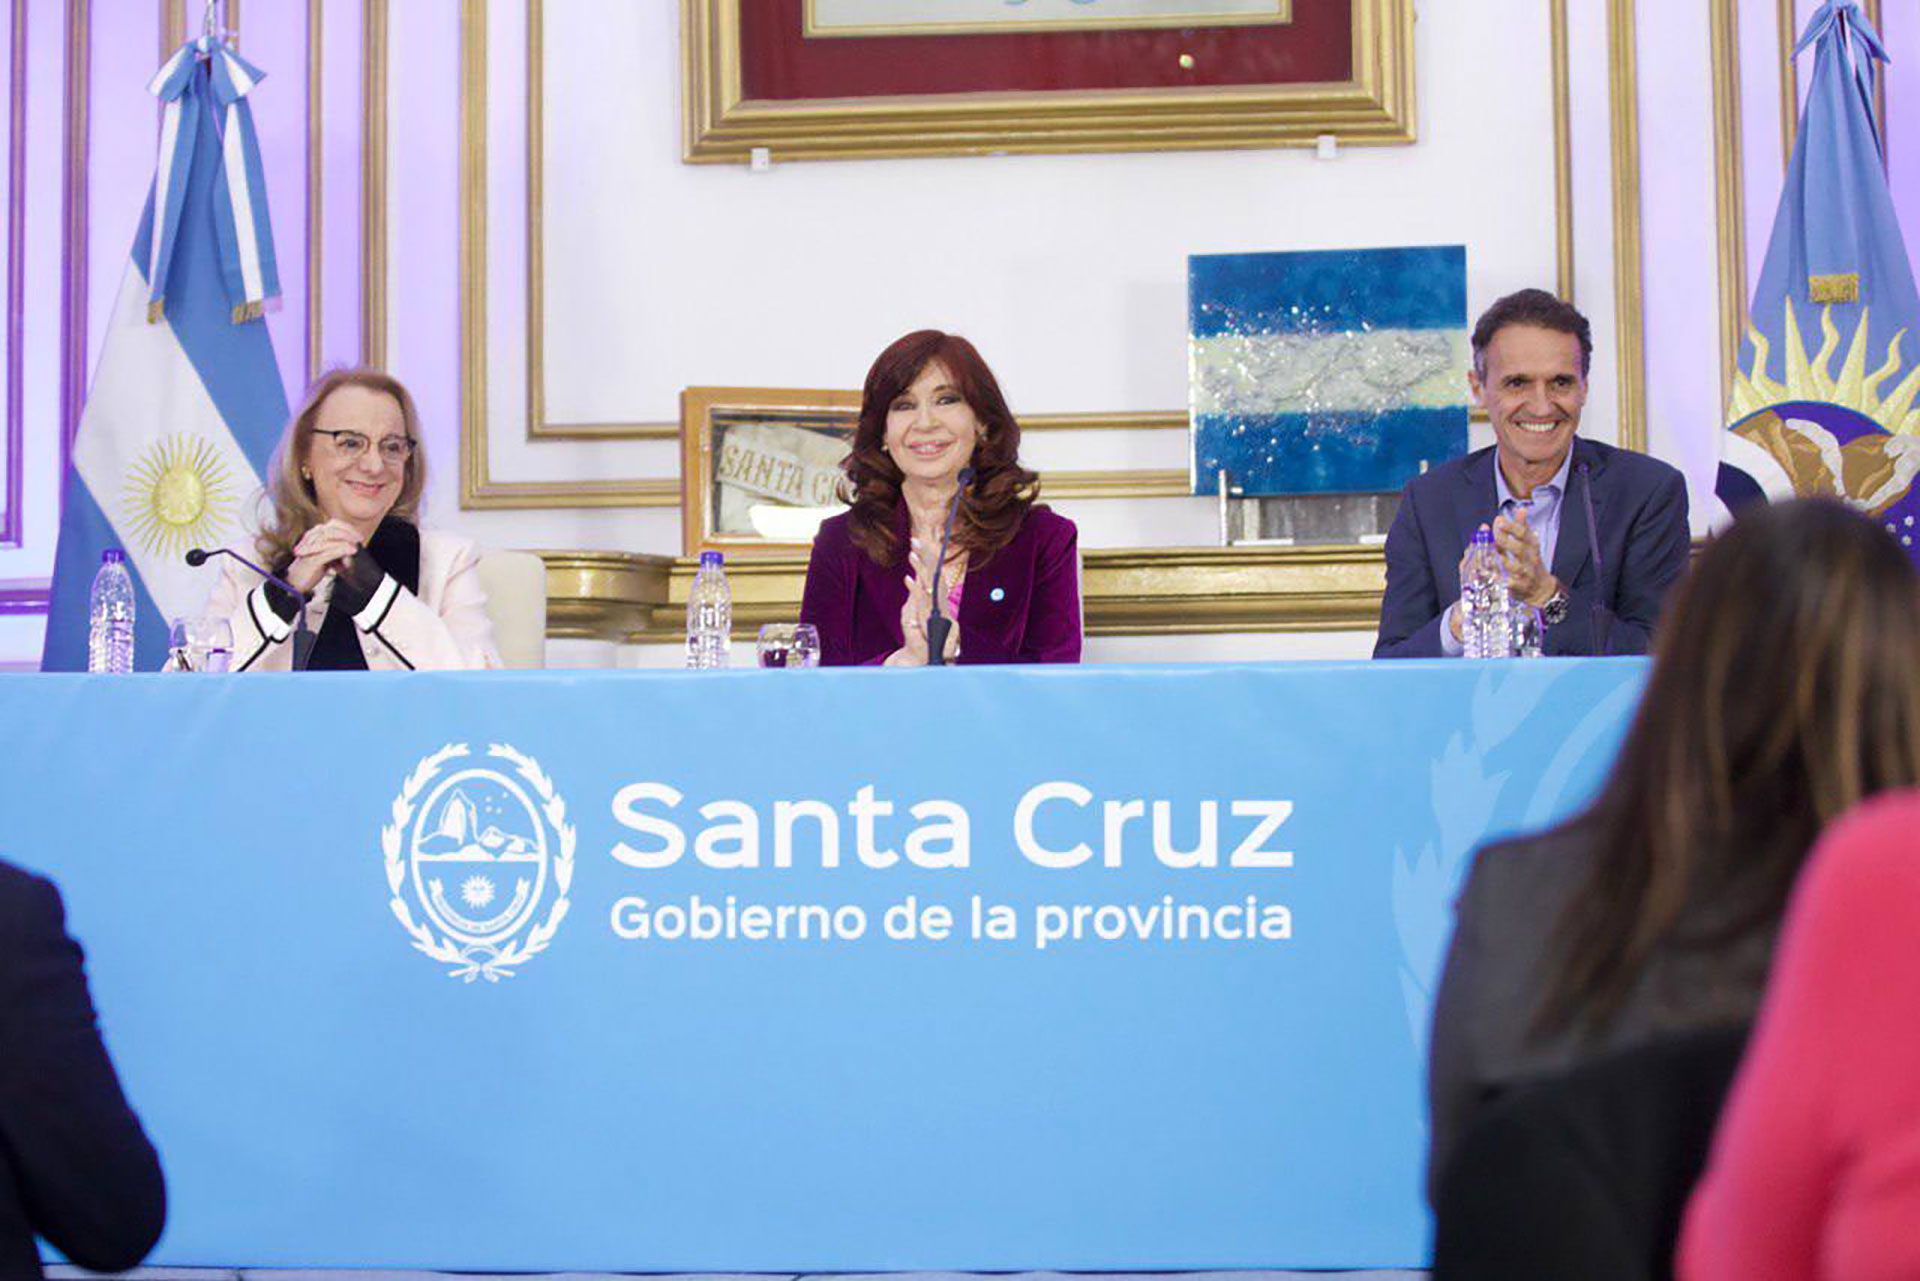 Cristina Kirchner en Río Gallegos